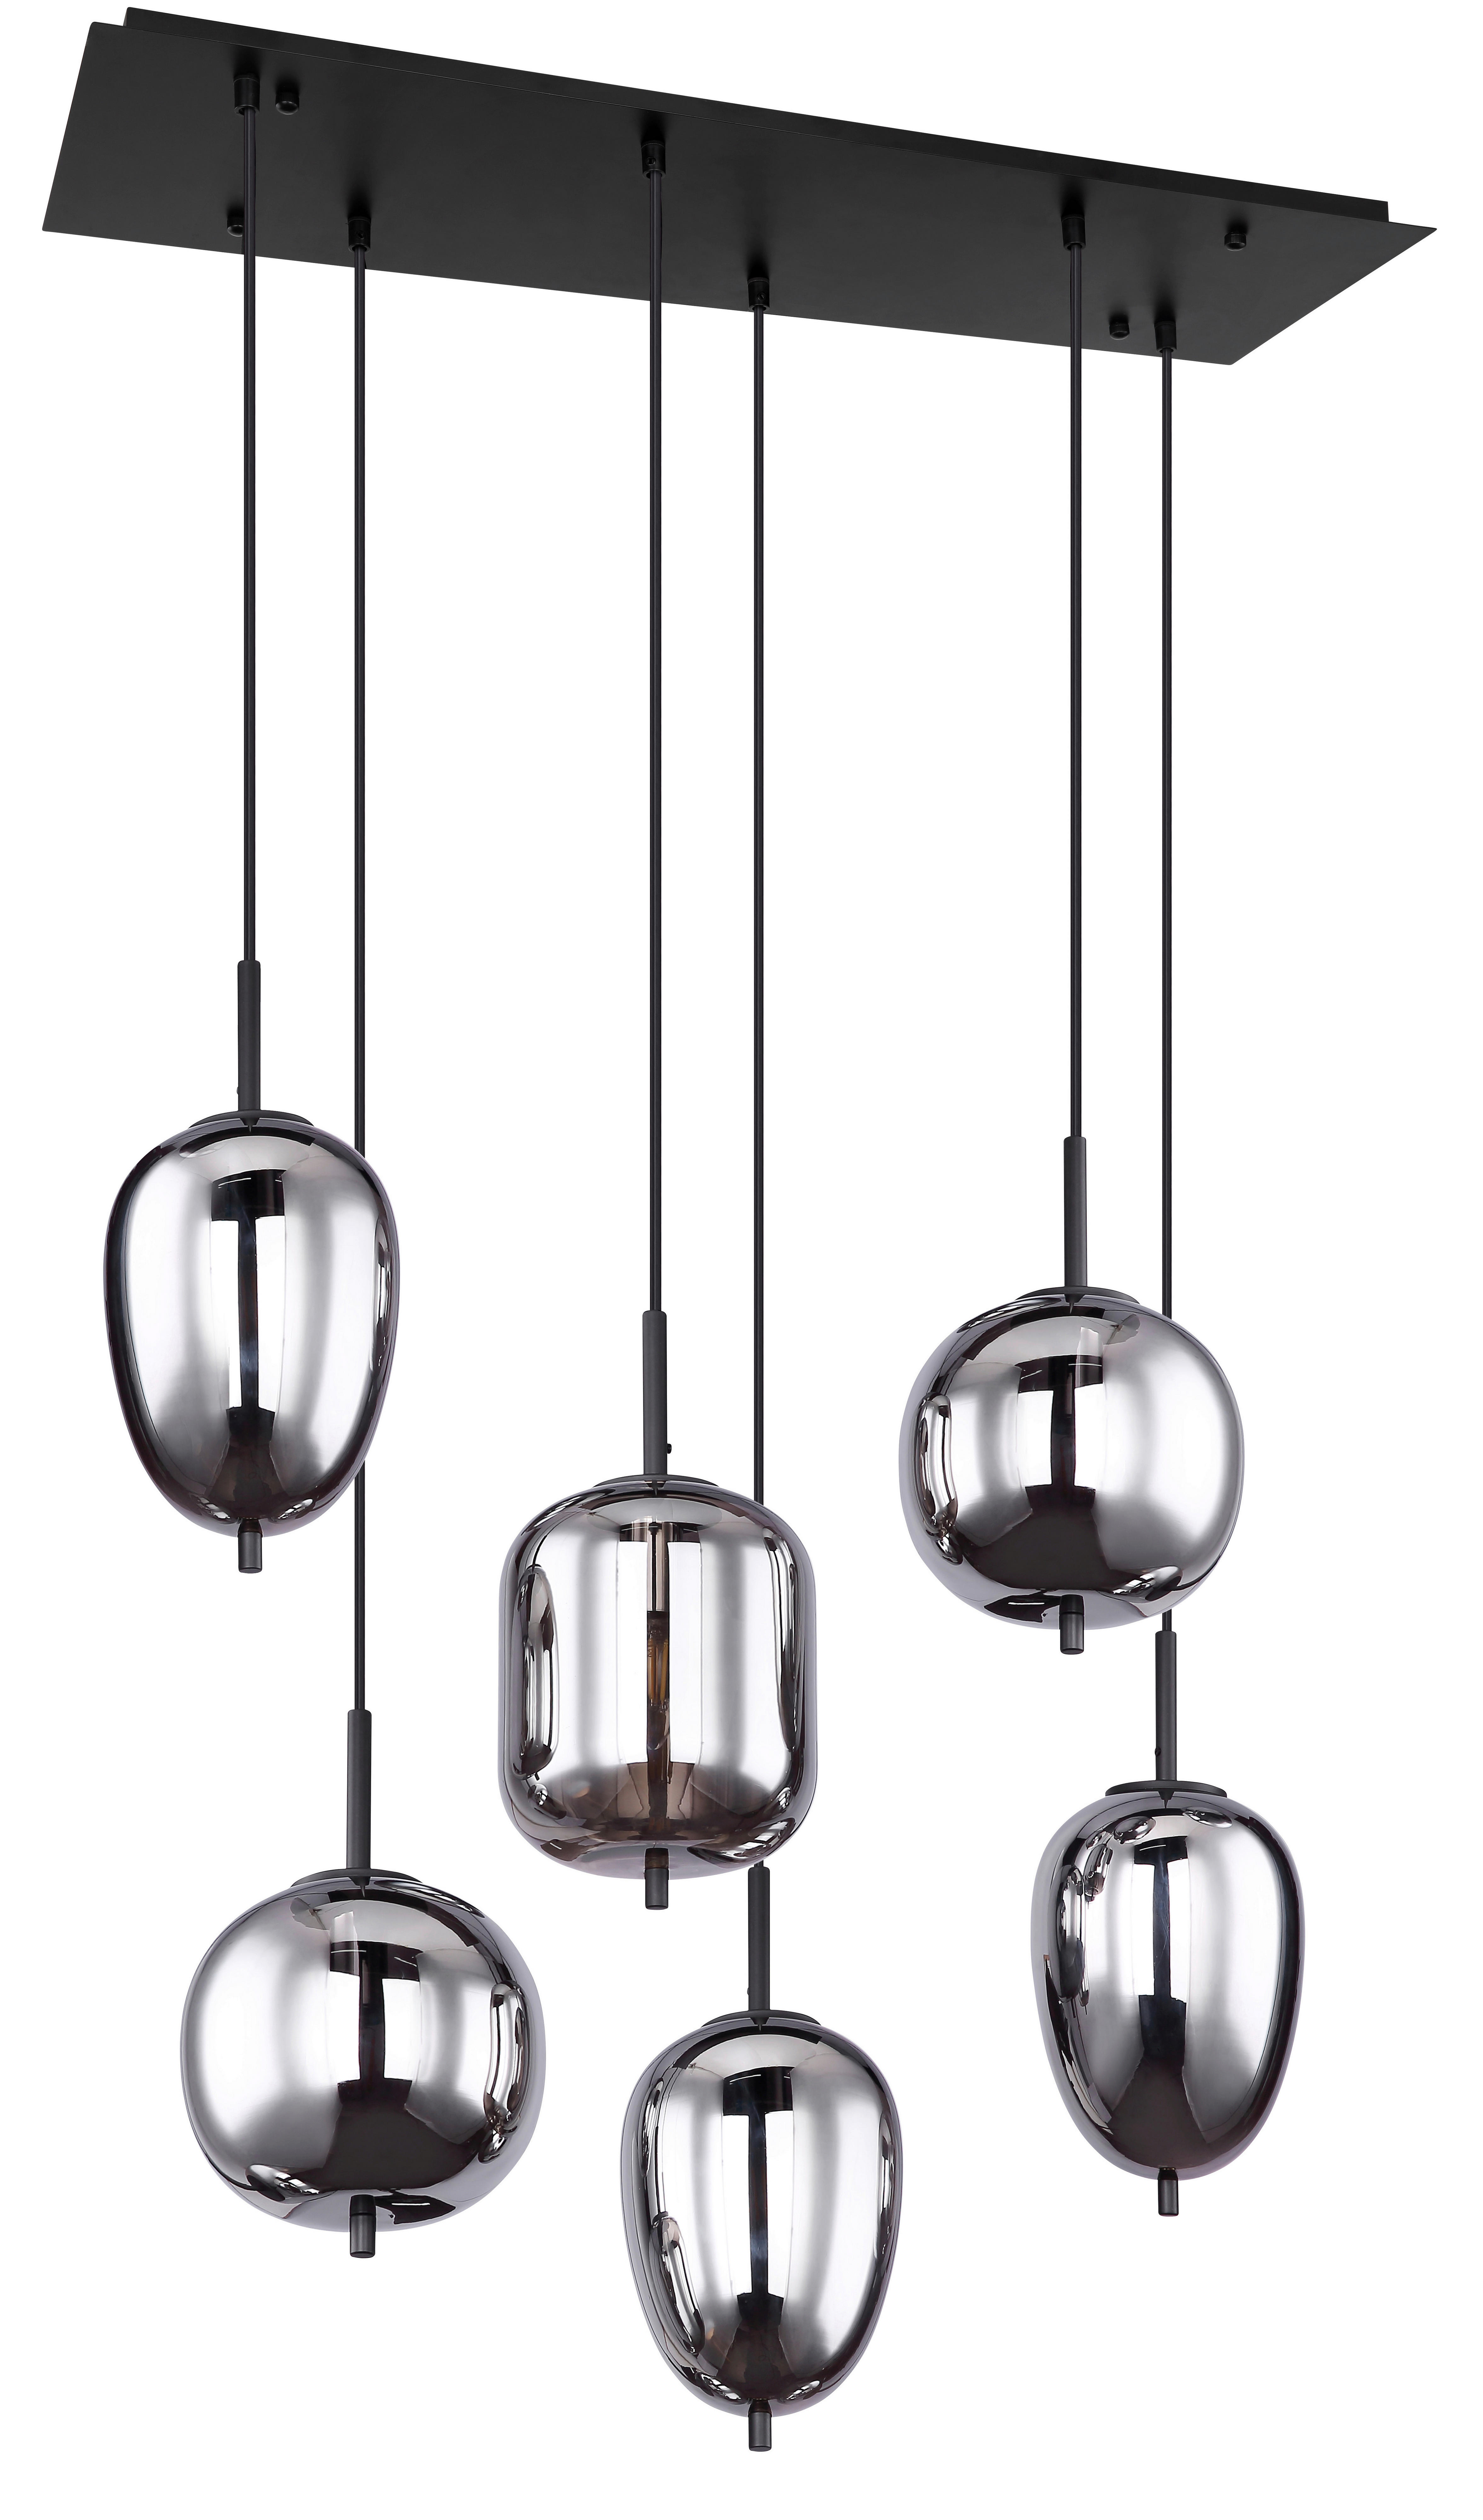 HÄNGELEUCHTE 80/34/120 cm   - Schwarz, Design, Glas/Metall (80/34/120cm) - Globo